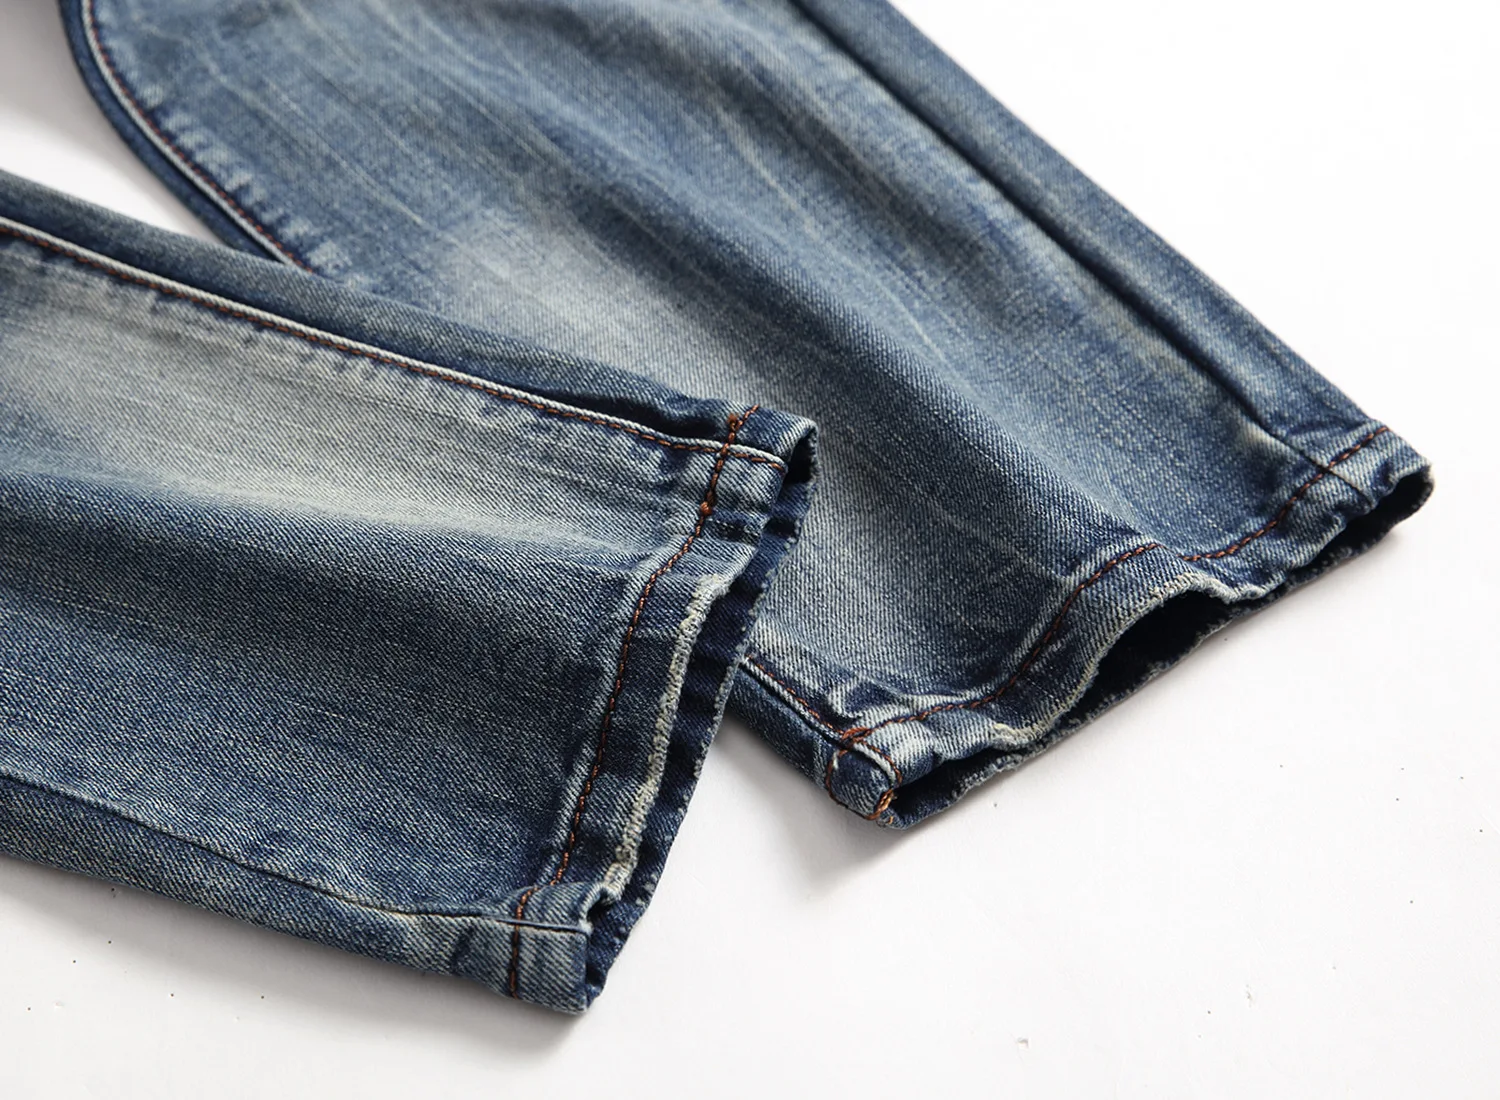 Gersri джинсы Для мужчин поцарапанные прямые джинсы Личность усы эффект Для мужчин дизайнер уничтожено Рваные джинсы мужские